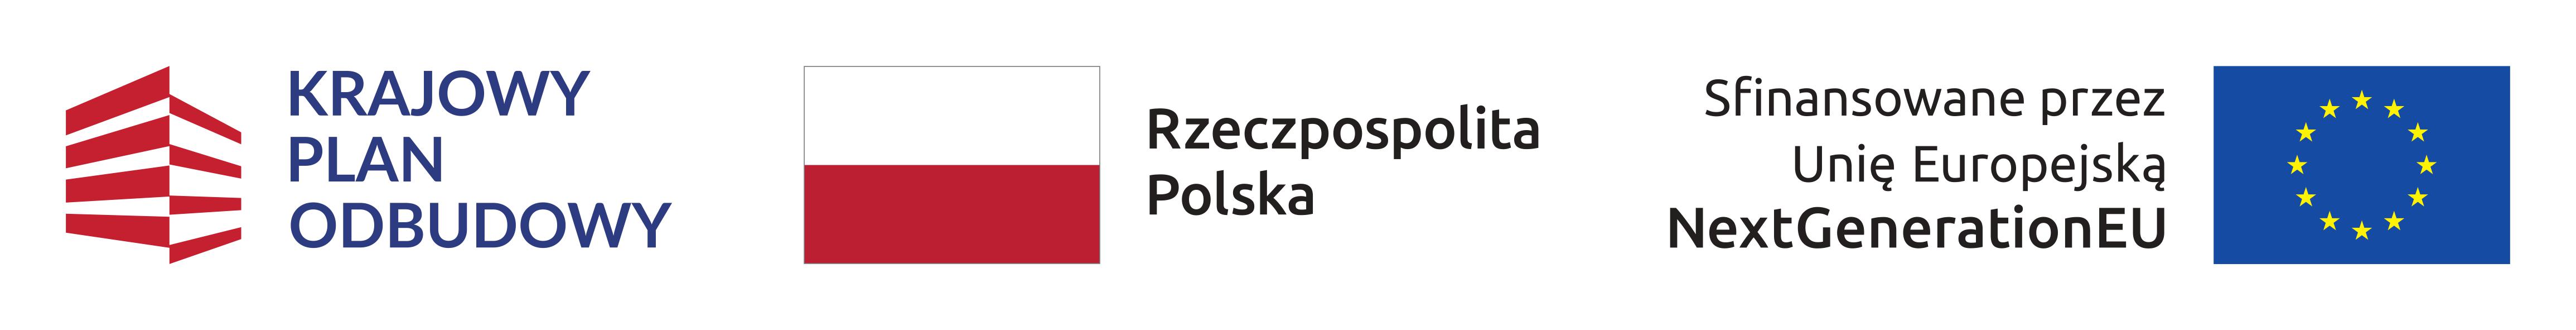 od lewej: Krajowy Plan Odbudowy, Rzeczpospolita Polska, Sfinansowane przez Unię Europejską NextGenerationEU